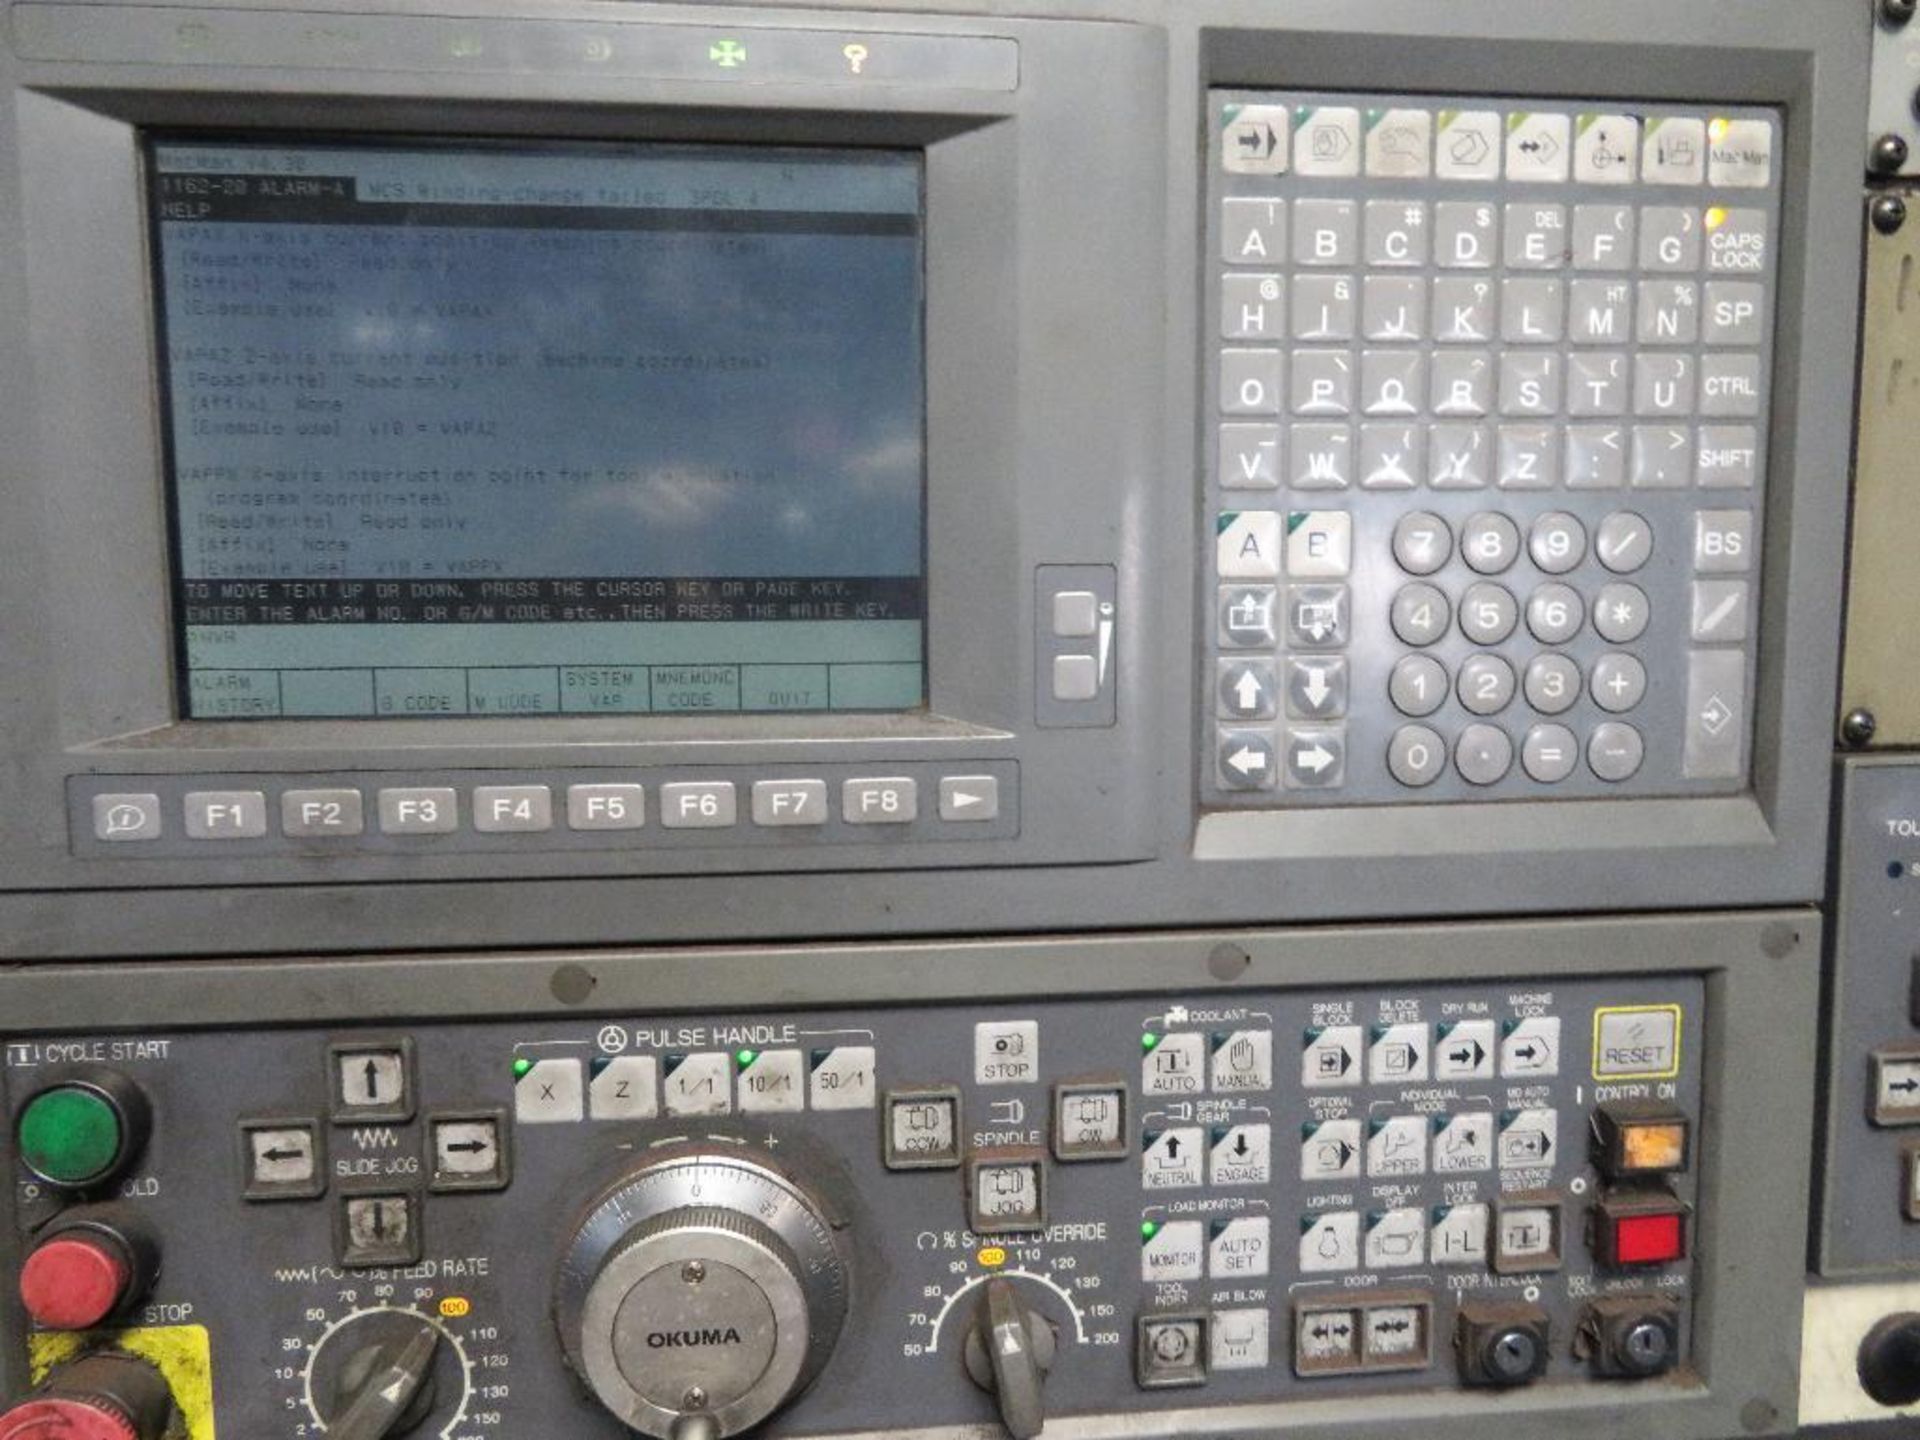 Okuma Crown L1420 CNC Lathe Model 769S, S/N 0345 (2001), Okuma OSP-U10L Control, 15 in. 3-Jaw Hydrau - Image 2 of 5